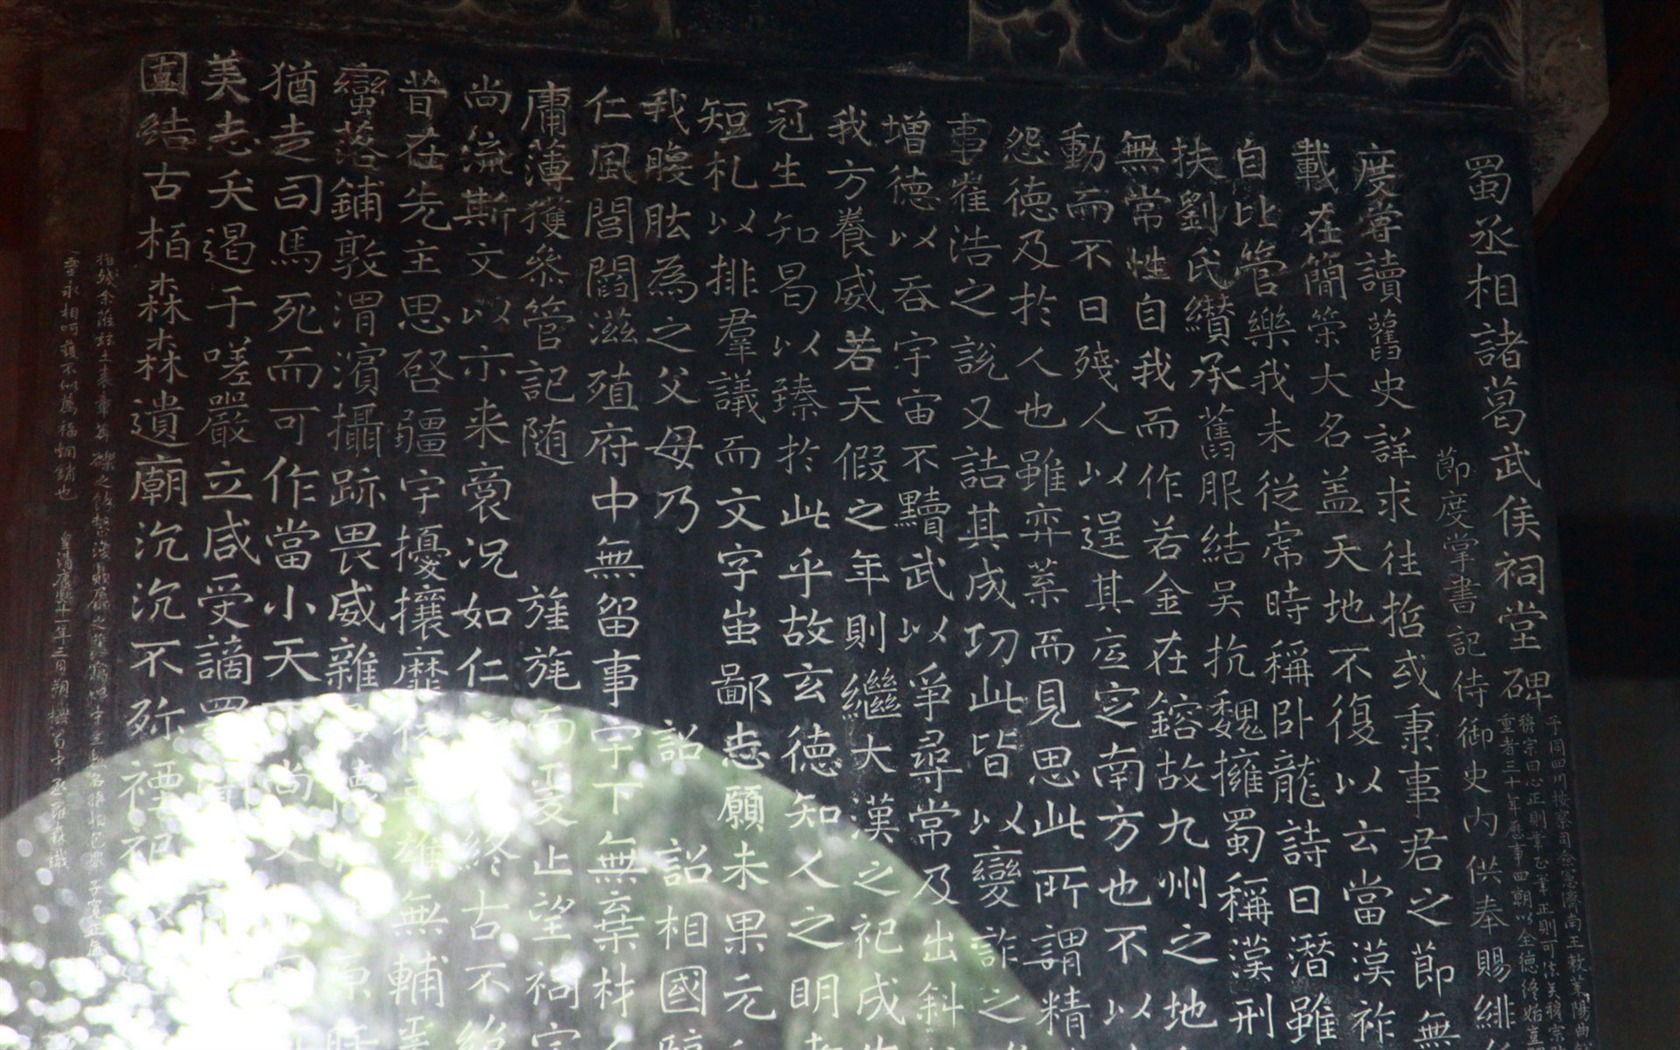 Chengdu Impression Tapete (4) #3 - 1680x1050